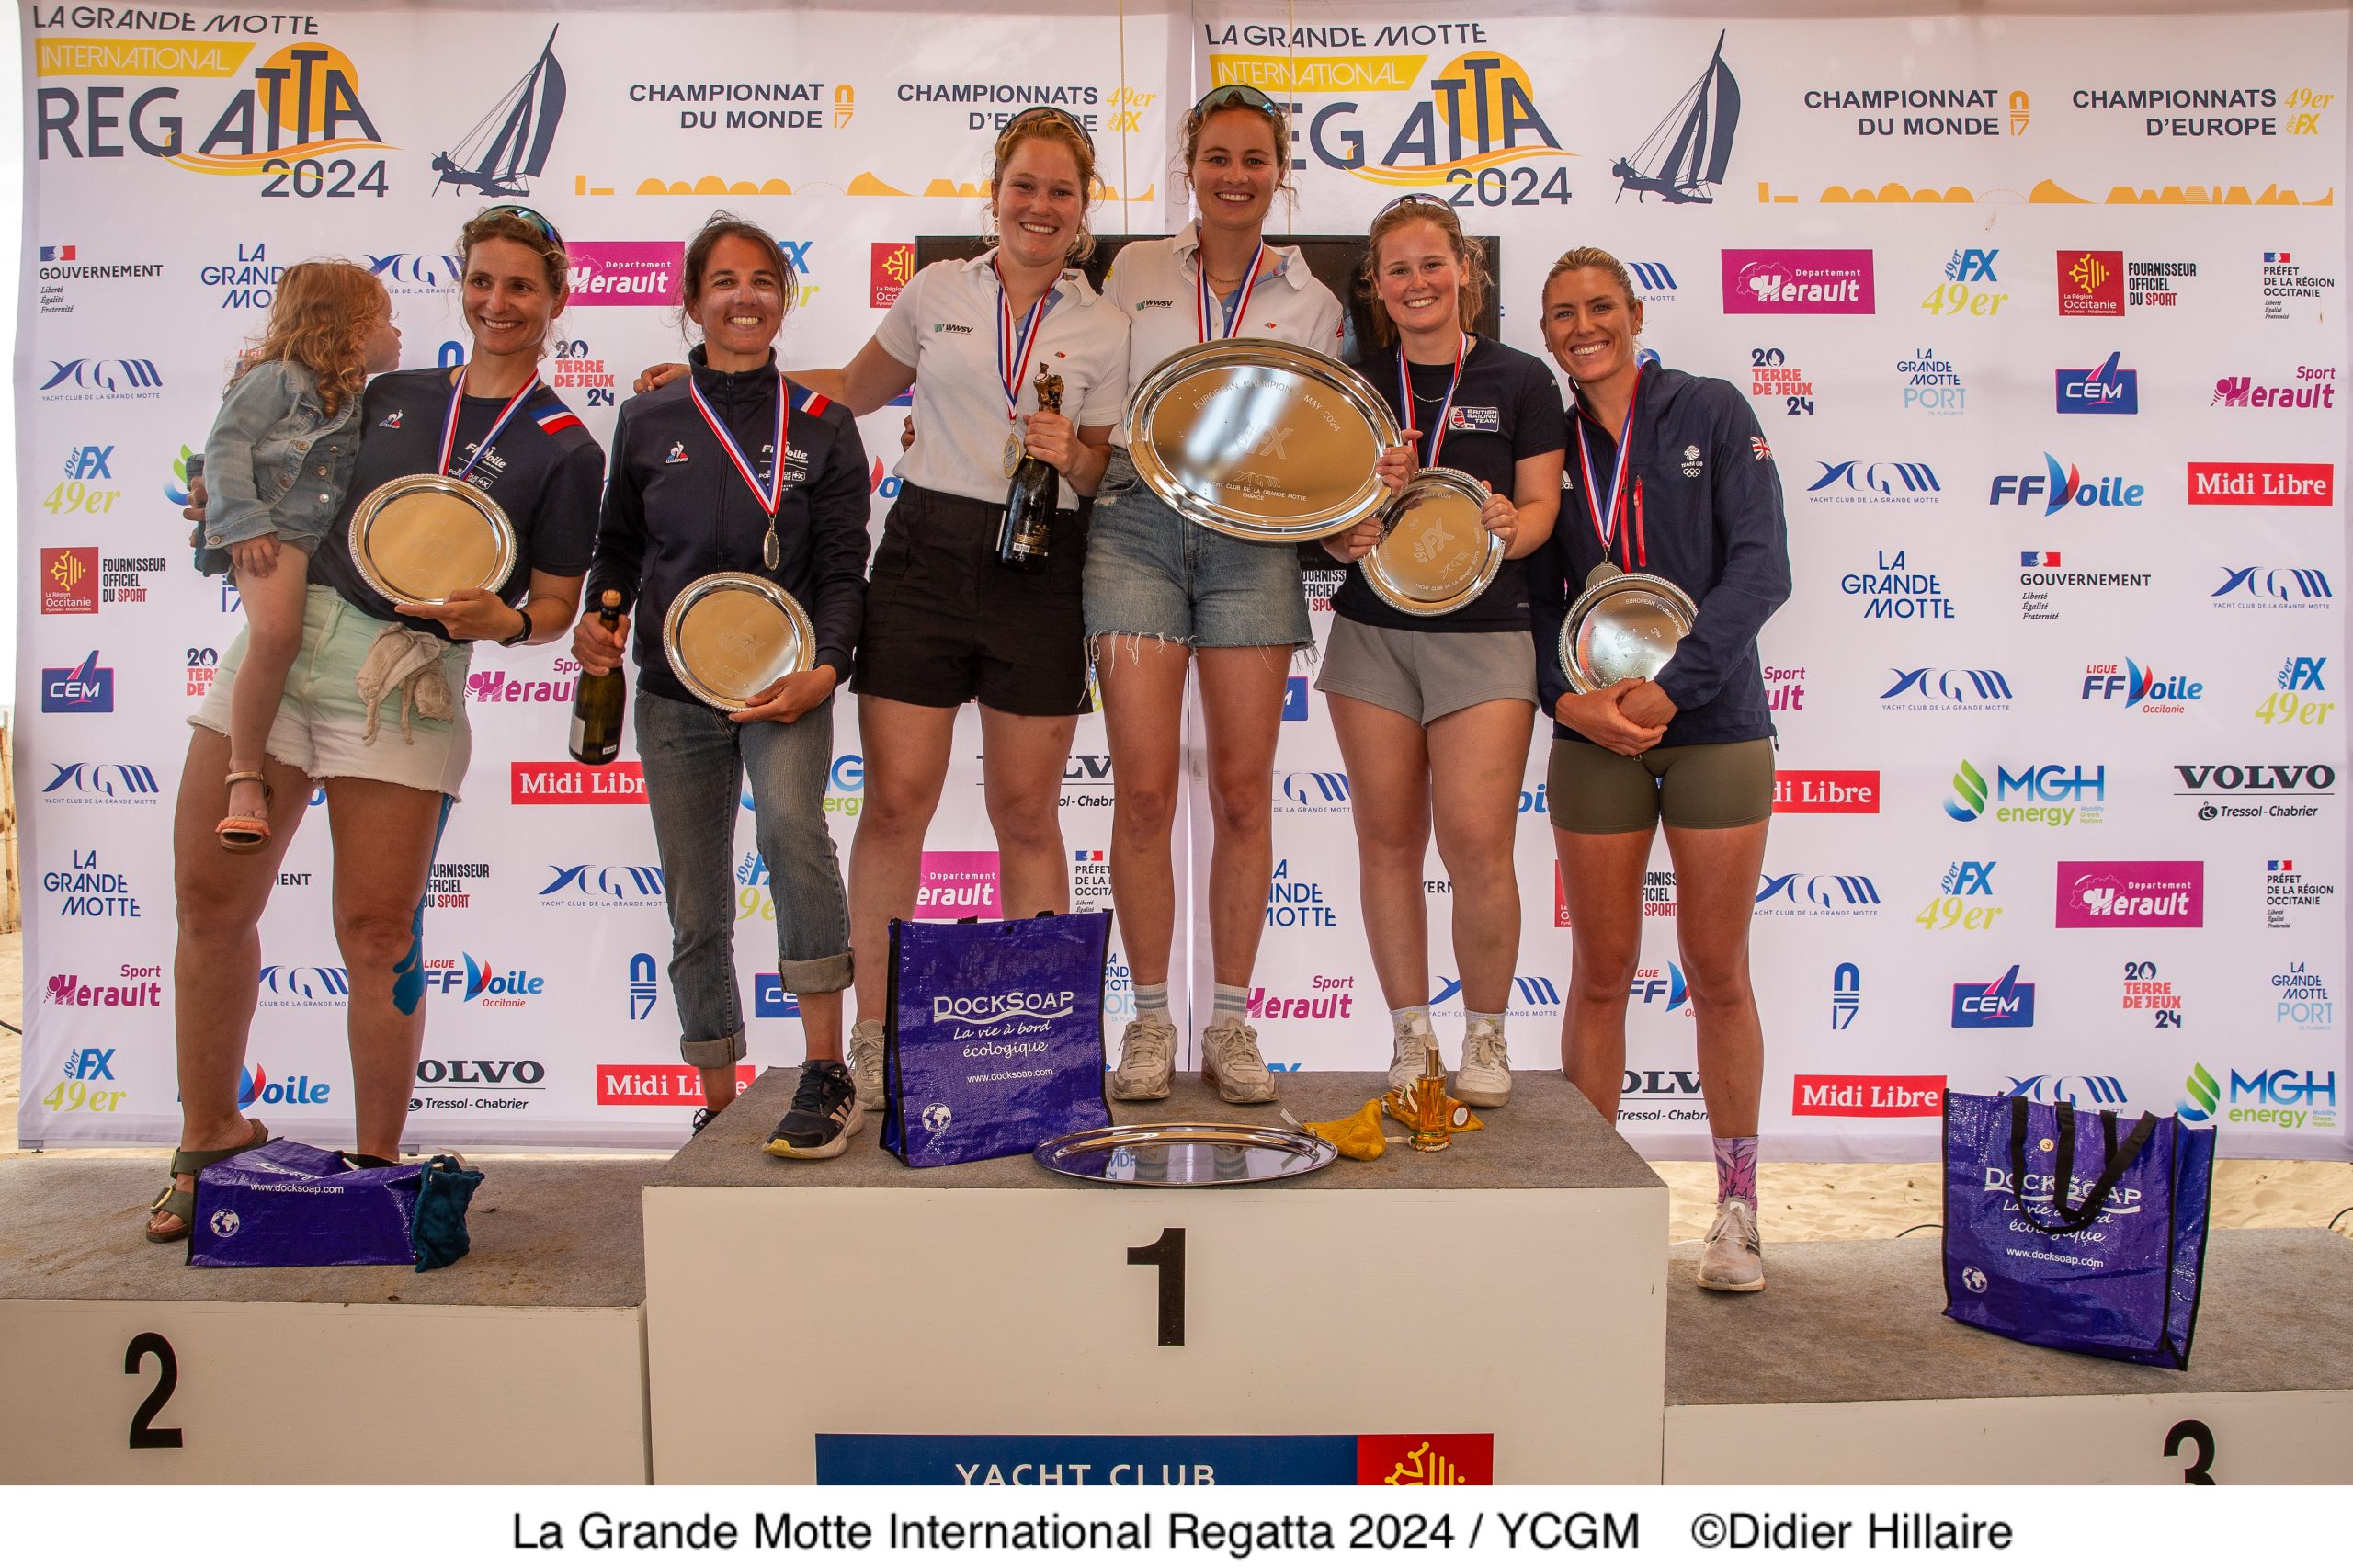  49er, 49erFX - European Championship - La Grande Motte FRA - Final results